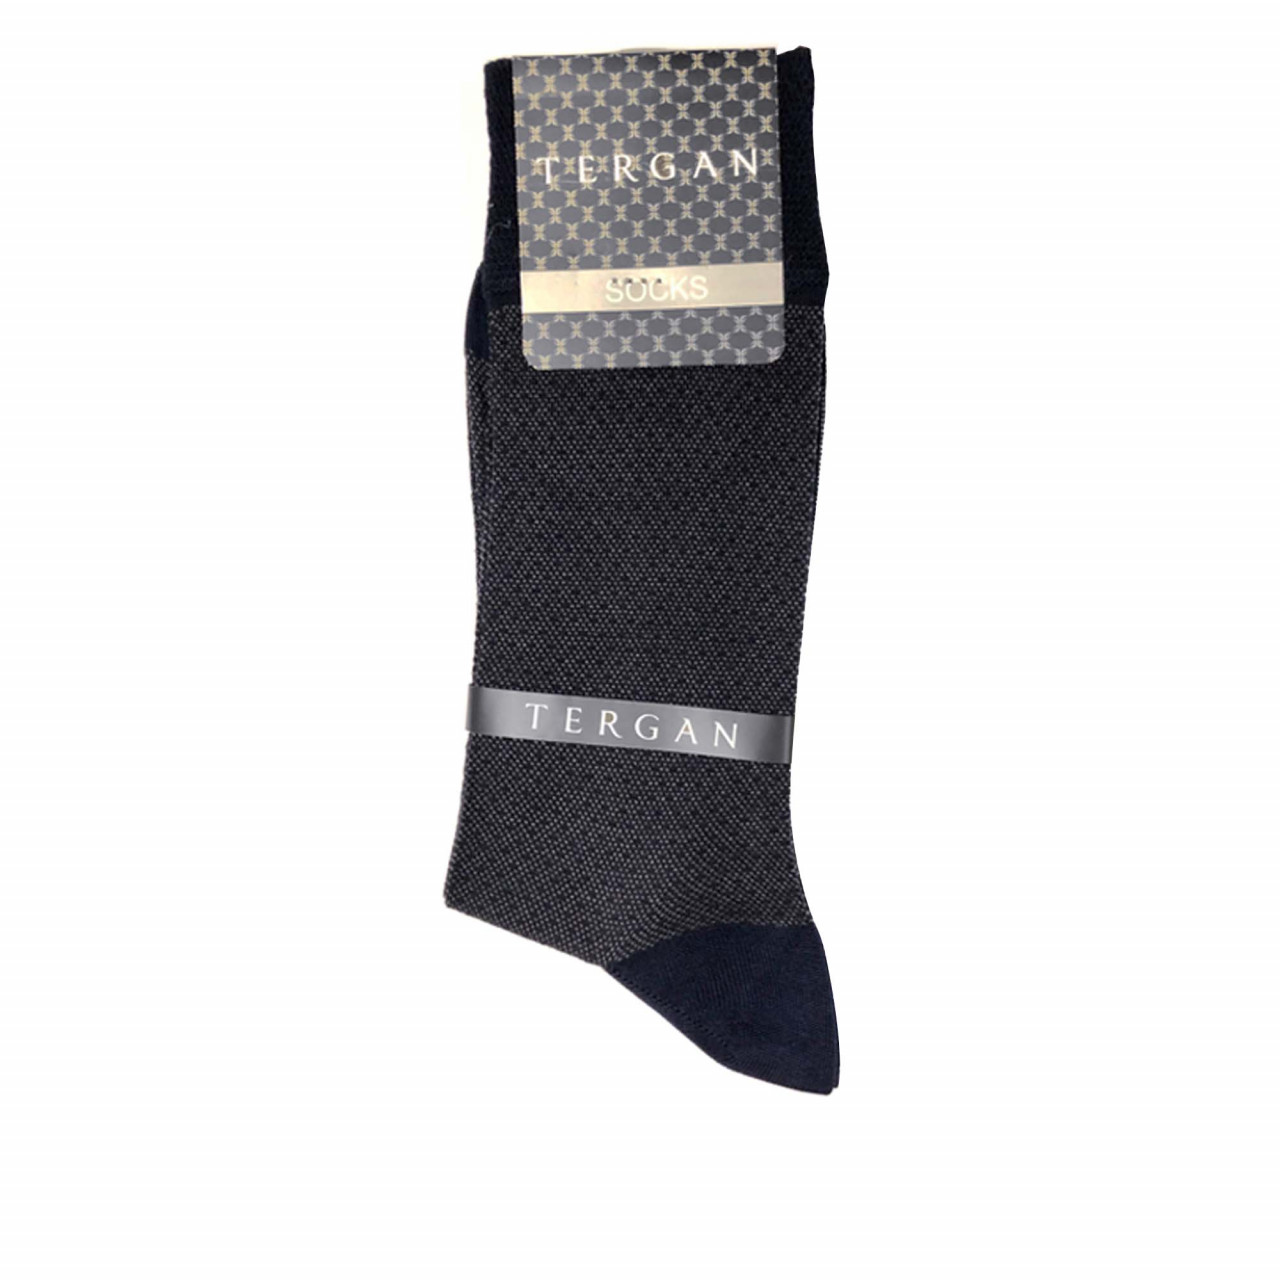 Тъмносини мъжки чорапи от памук и бамбук